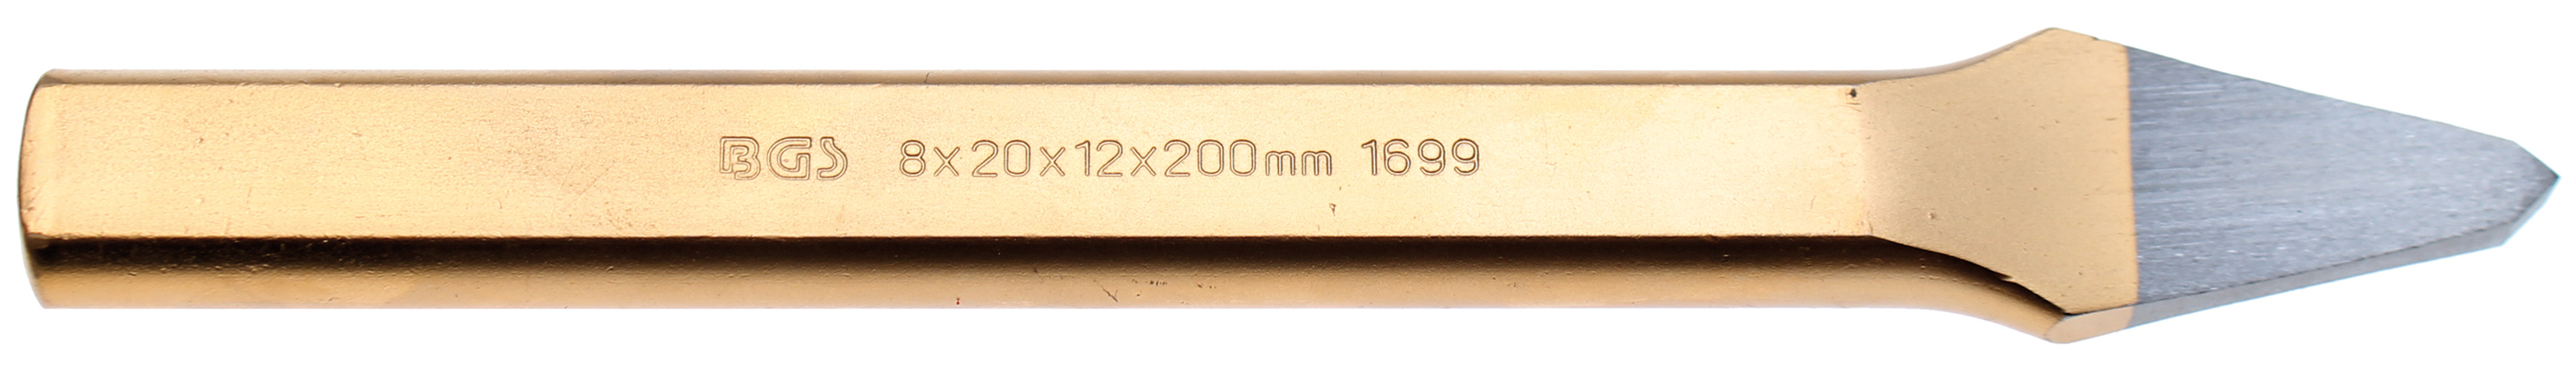 BGS 1699 Dalta ascutita 6 x 200 mm